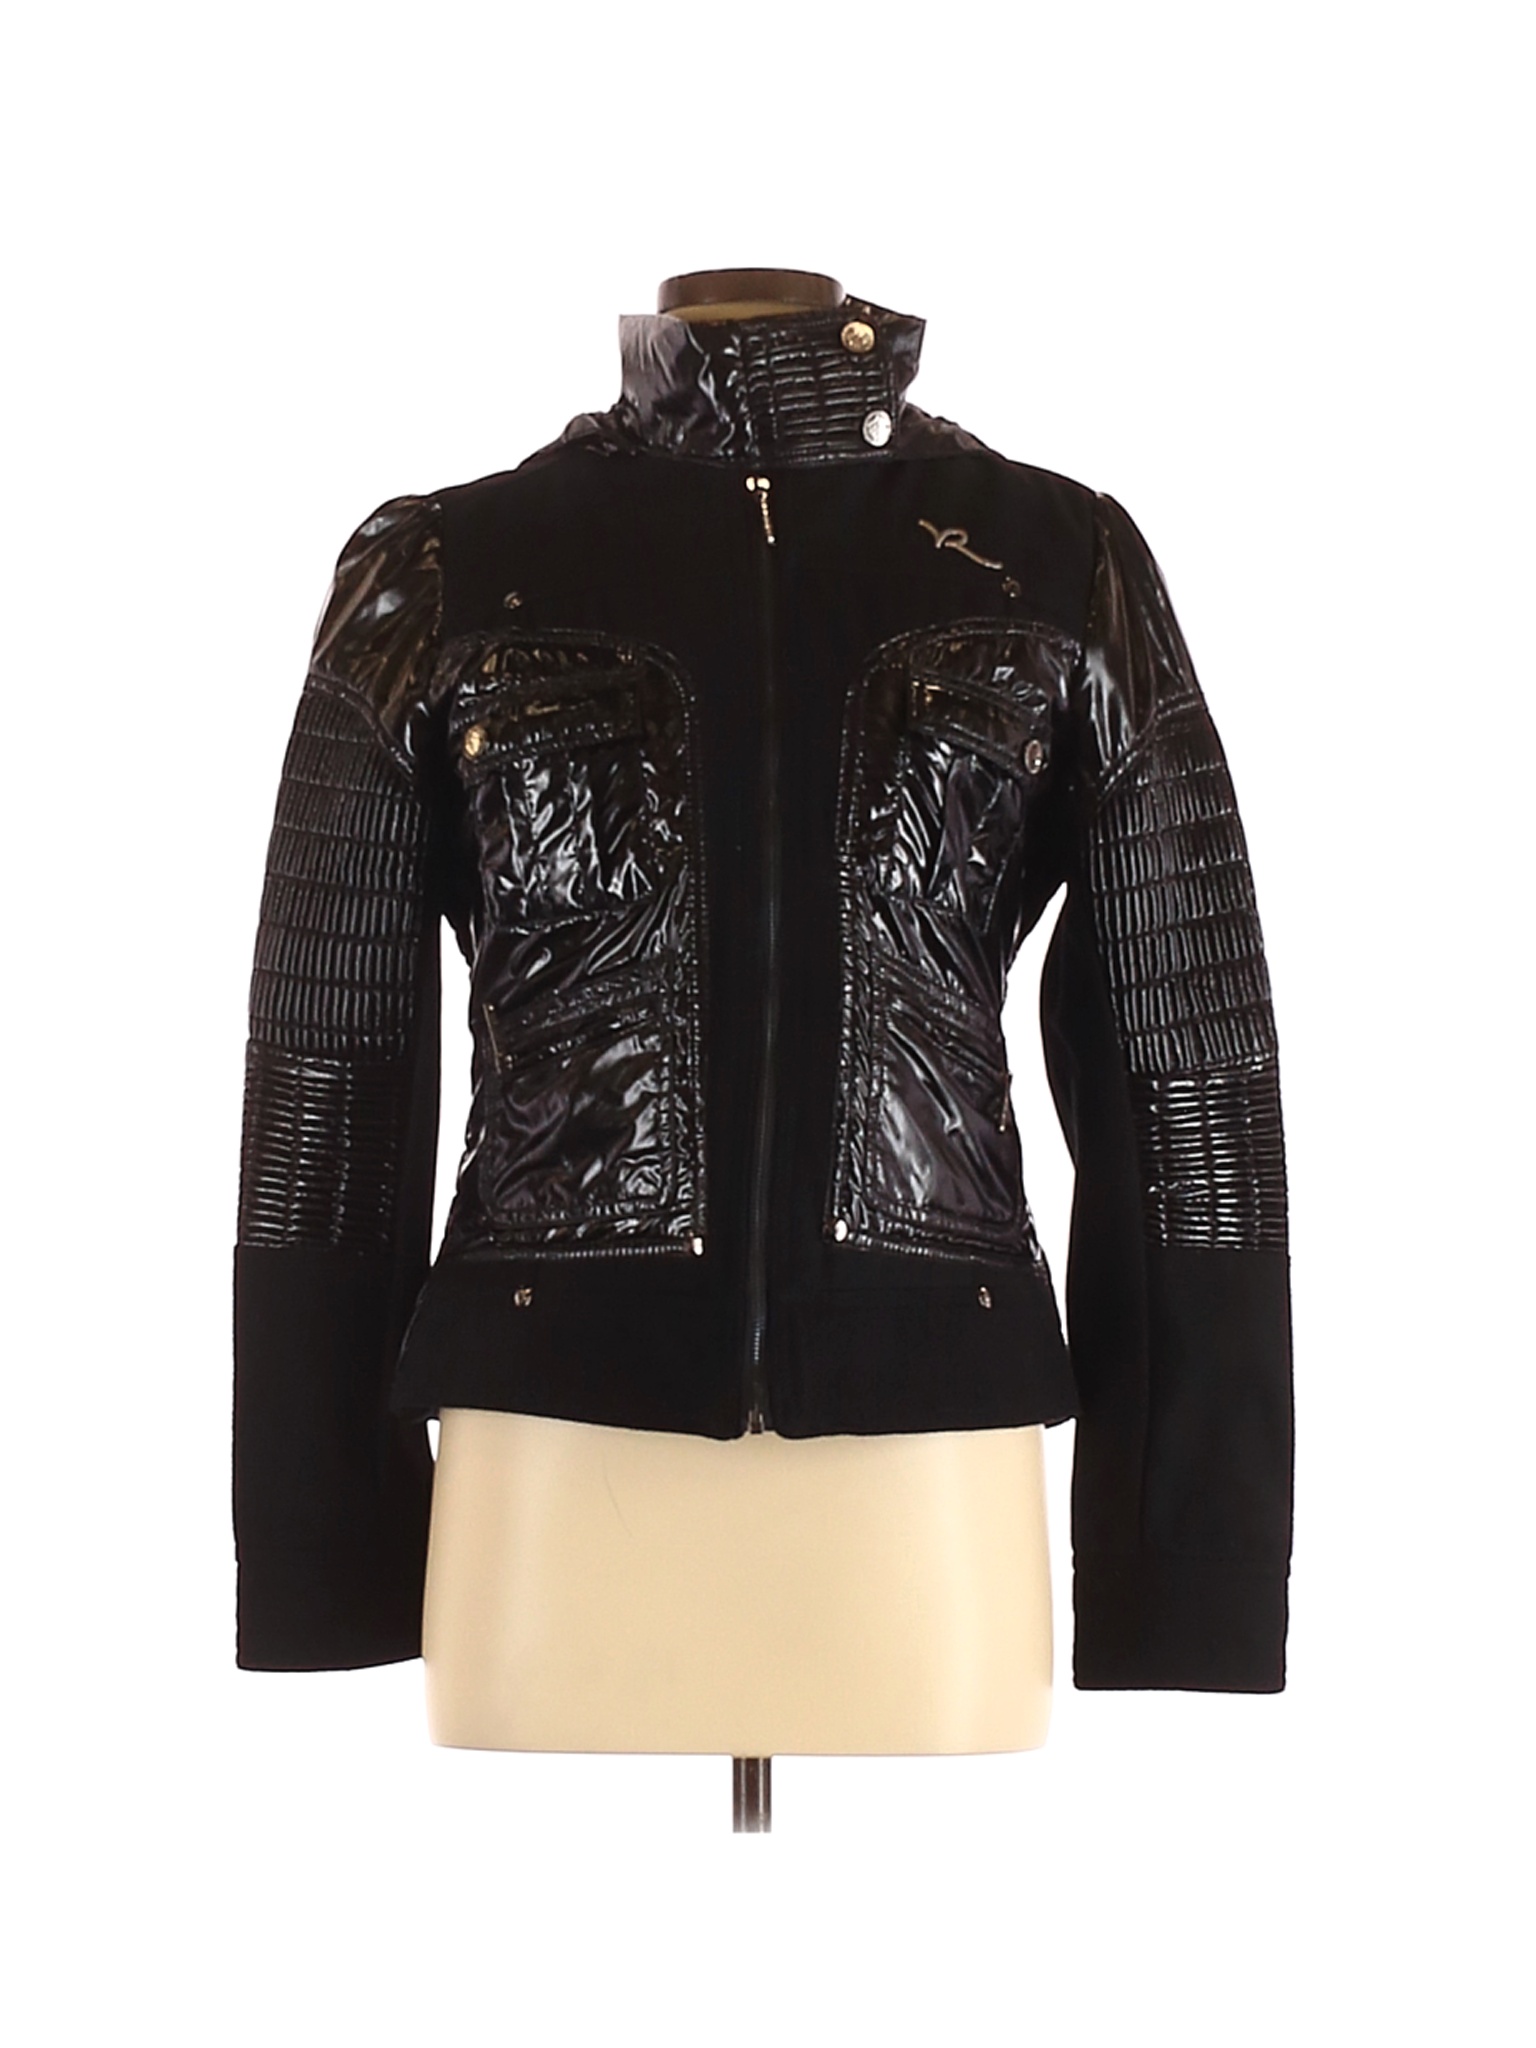 Rocawear Women Black Faux Leather Jacket M | eBay